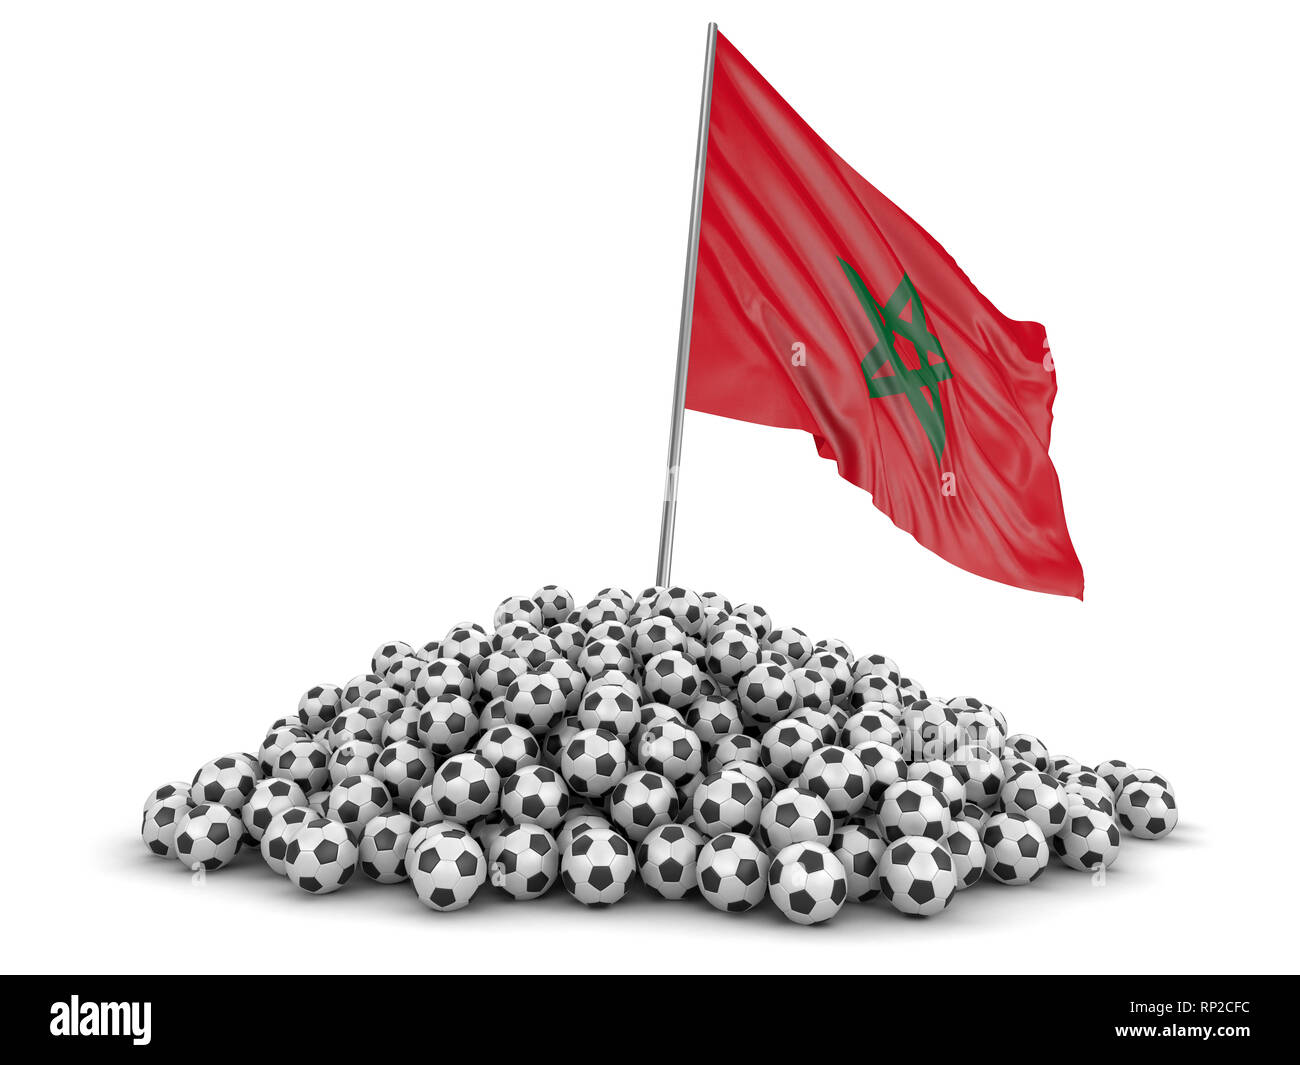 Tas de ballons de soccer et d'un drapeau. Image avec clipping path Banque D'Images